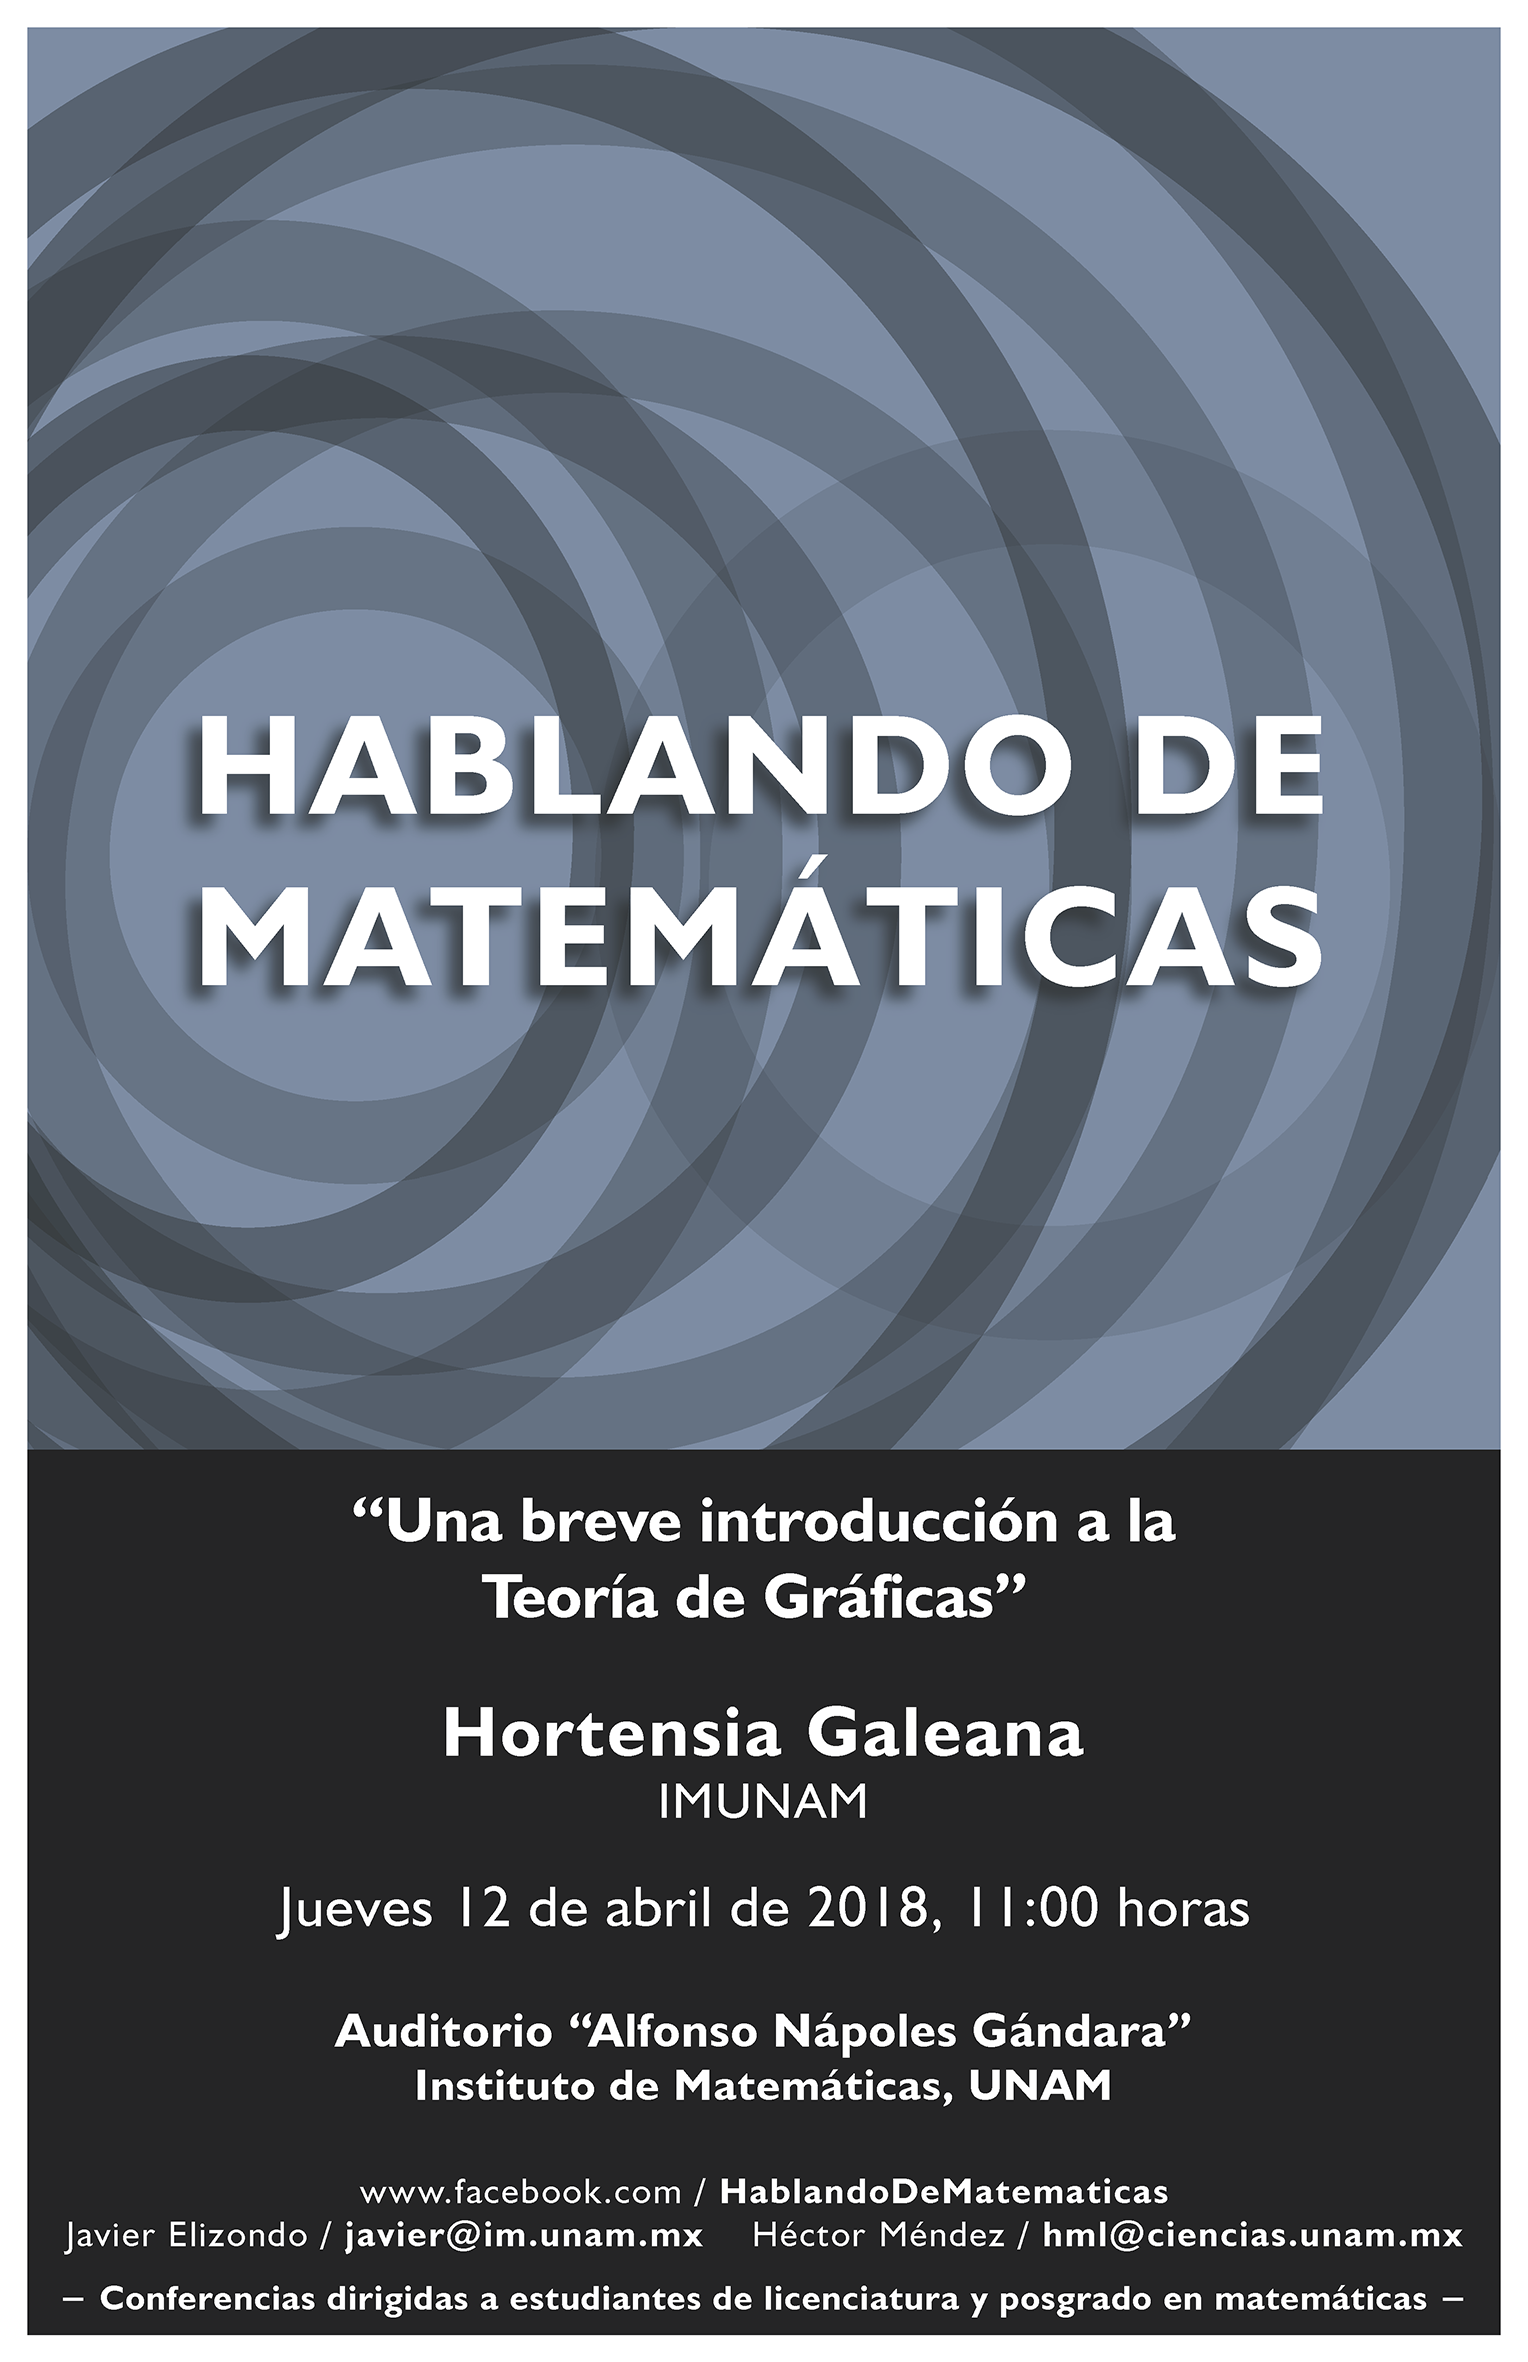 Hablando de Matemáticas: Hortensia Galeana, IMUNAM